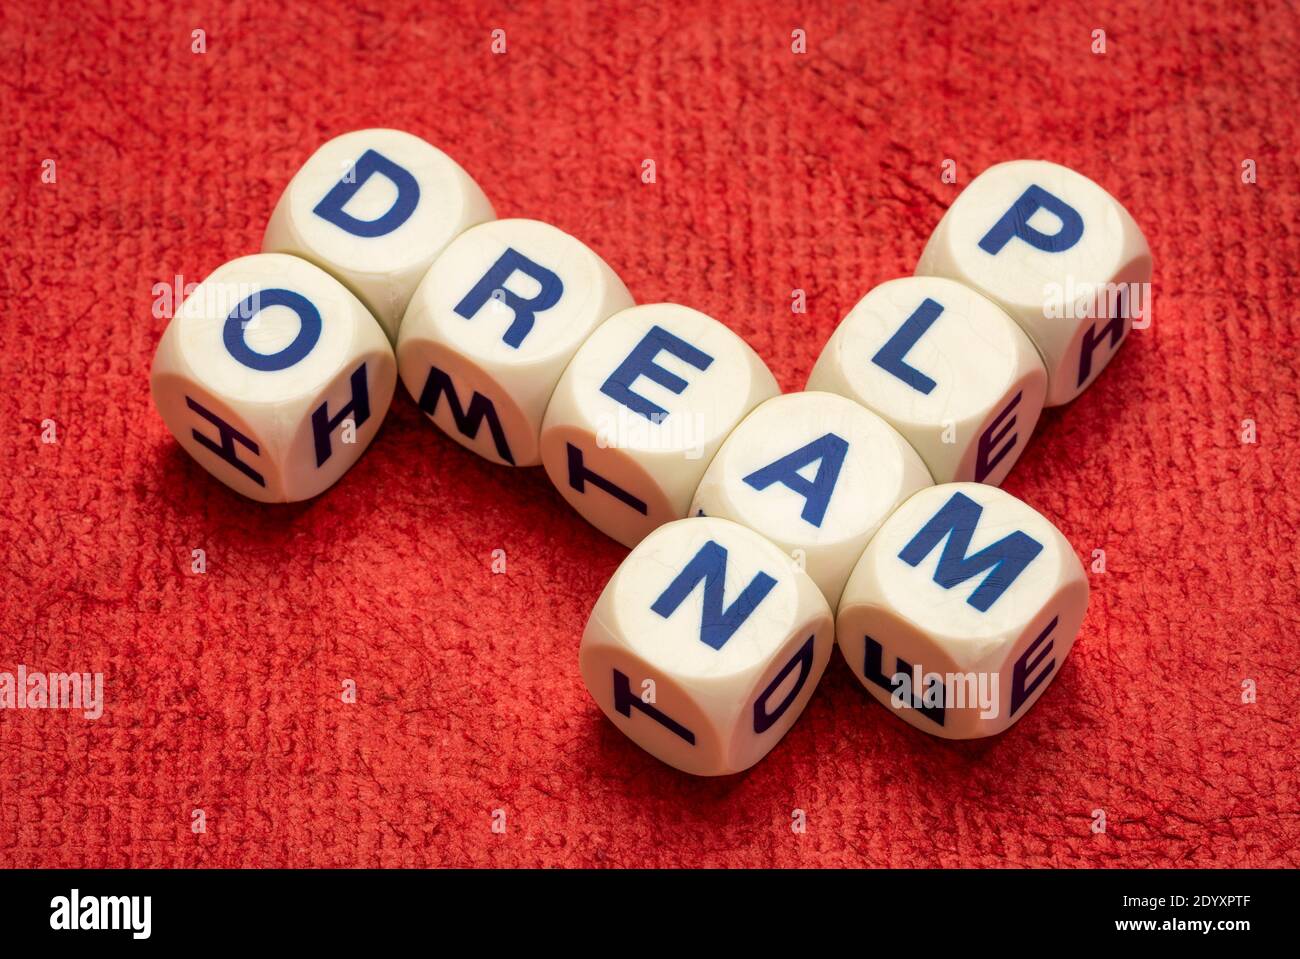 sogna, pianifica, fai crossword in lettere dice contro carta fatta a mano, ispirazione e concetto di motivazione Foto Stock